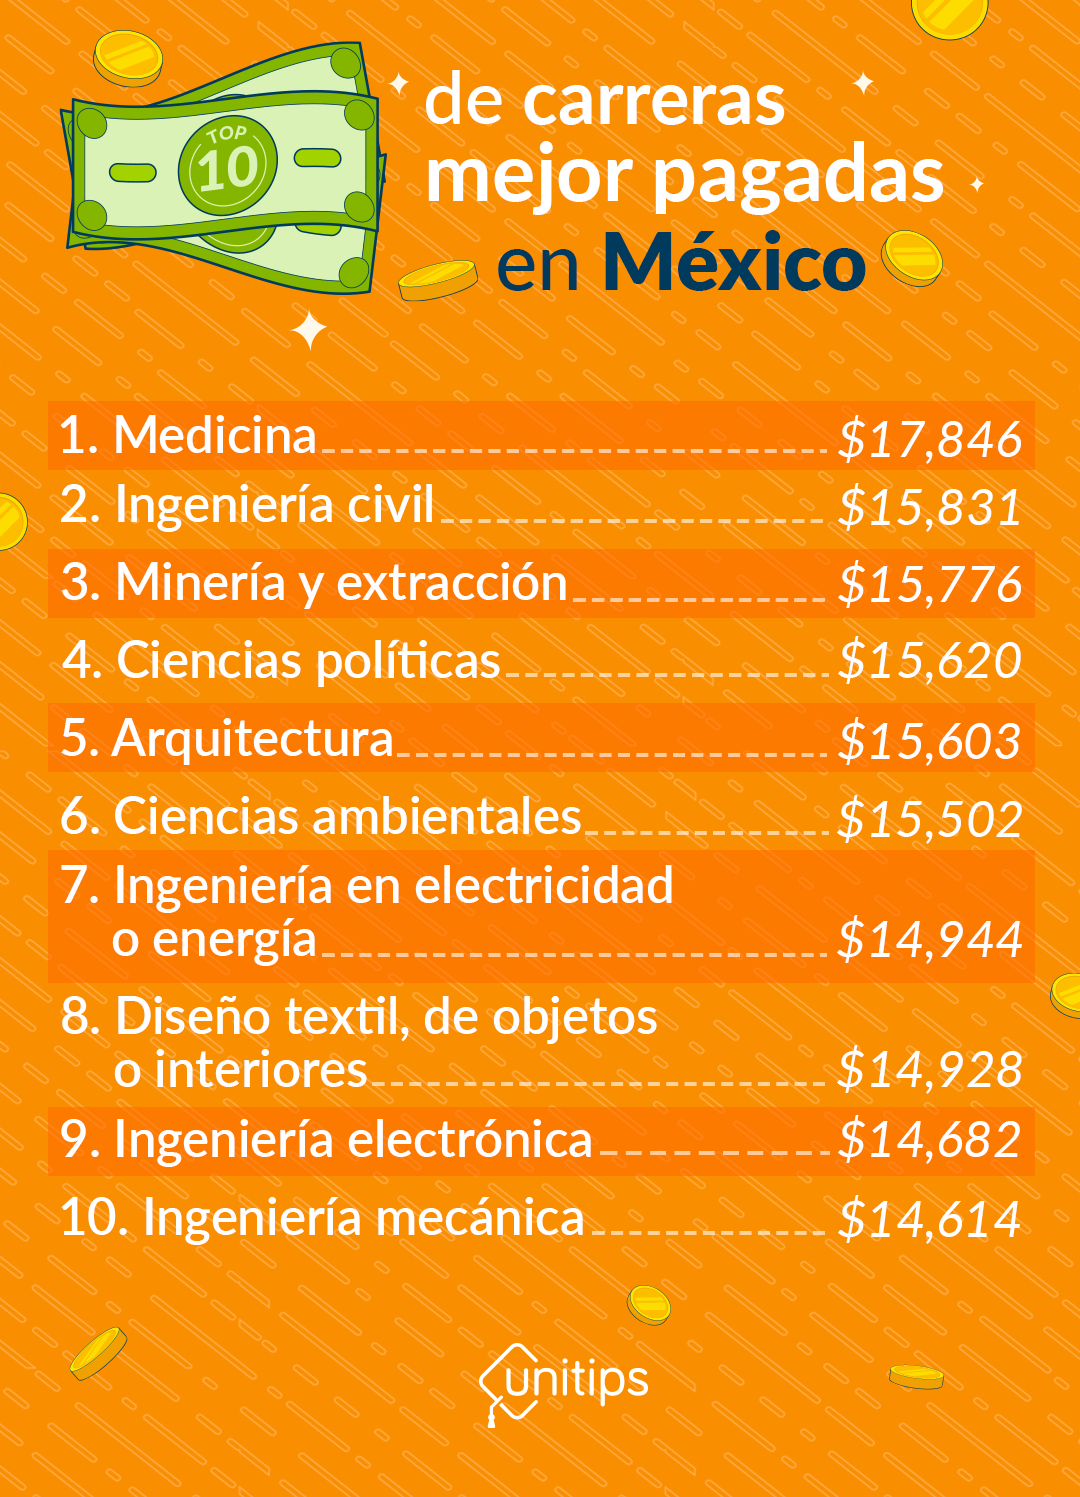 ¿Cuáles son las carreras mejor pagadas en México